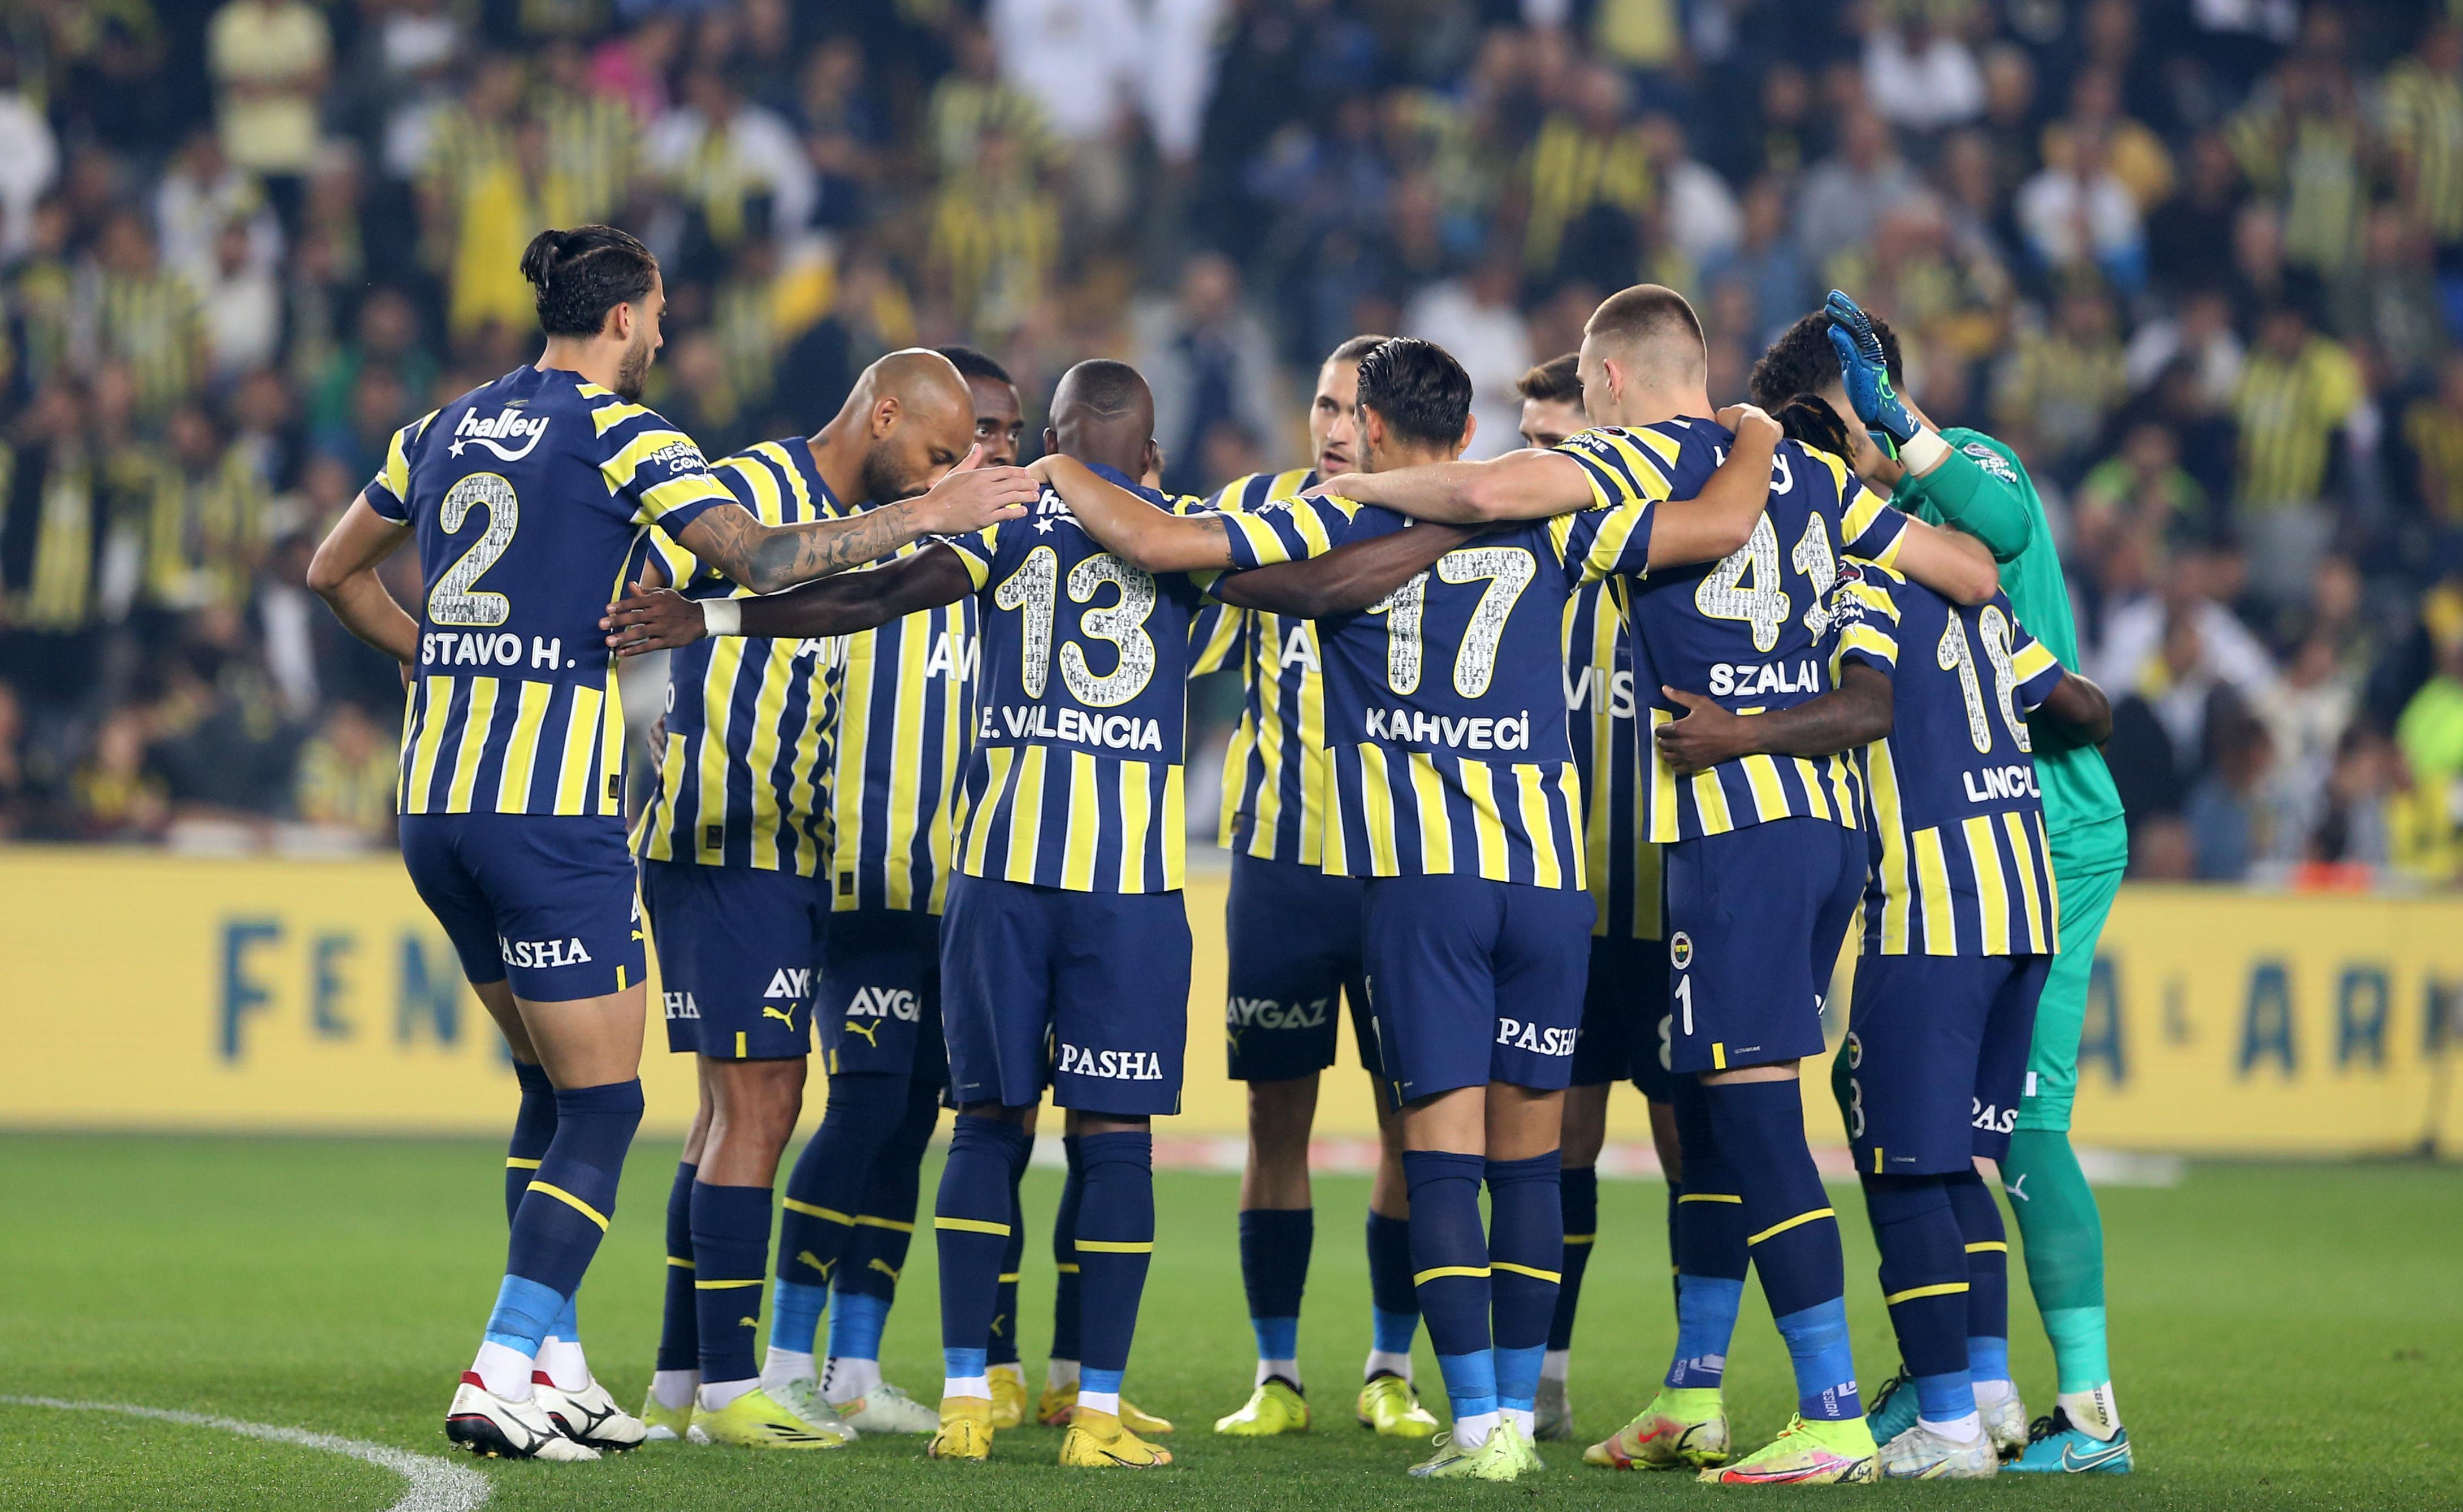 Fenerbahçe - Galatasaray derbisine büyük ilgi Takip edilecek 10 futbolcu belli oldu